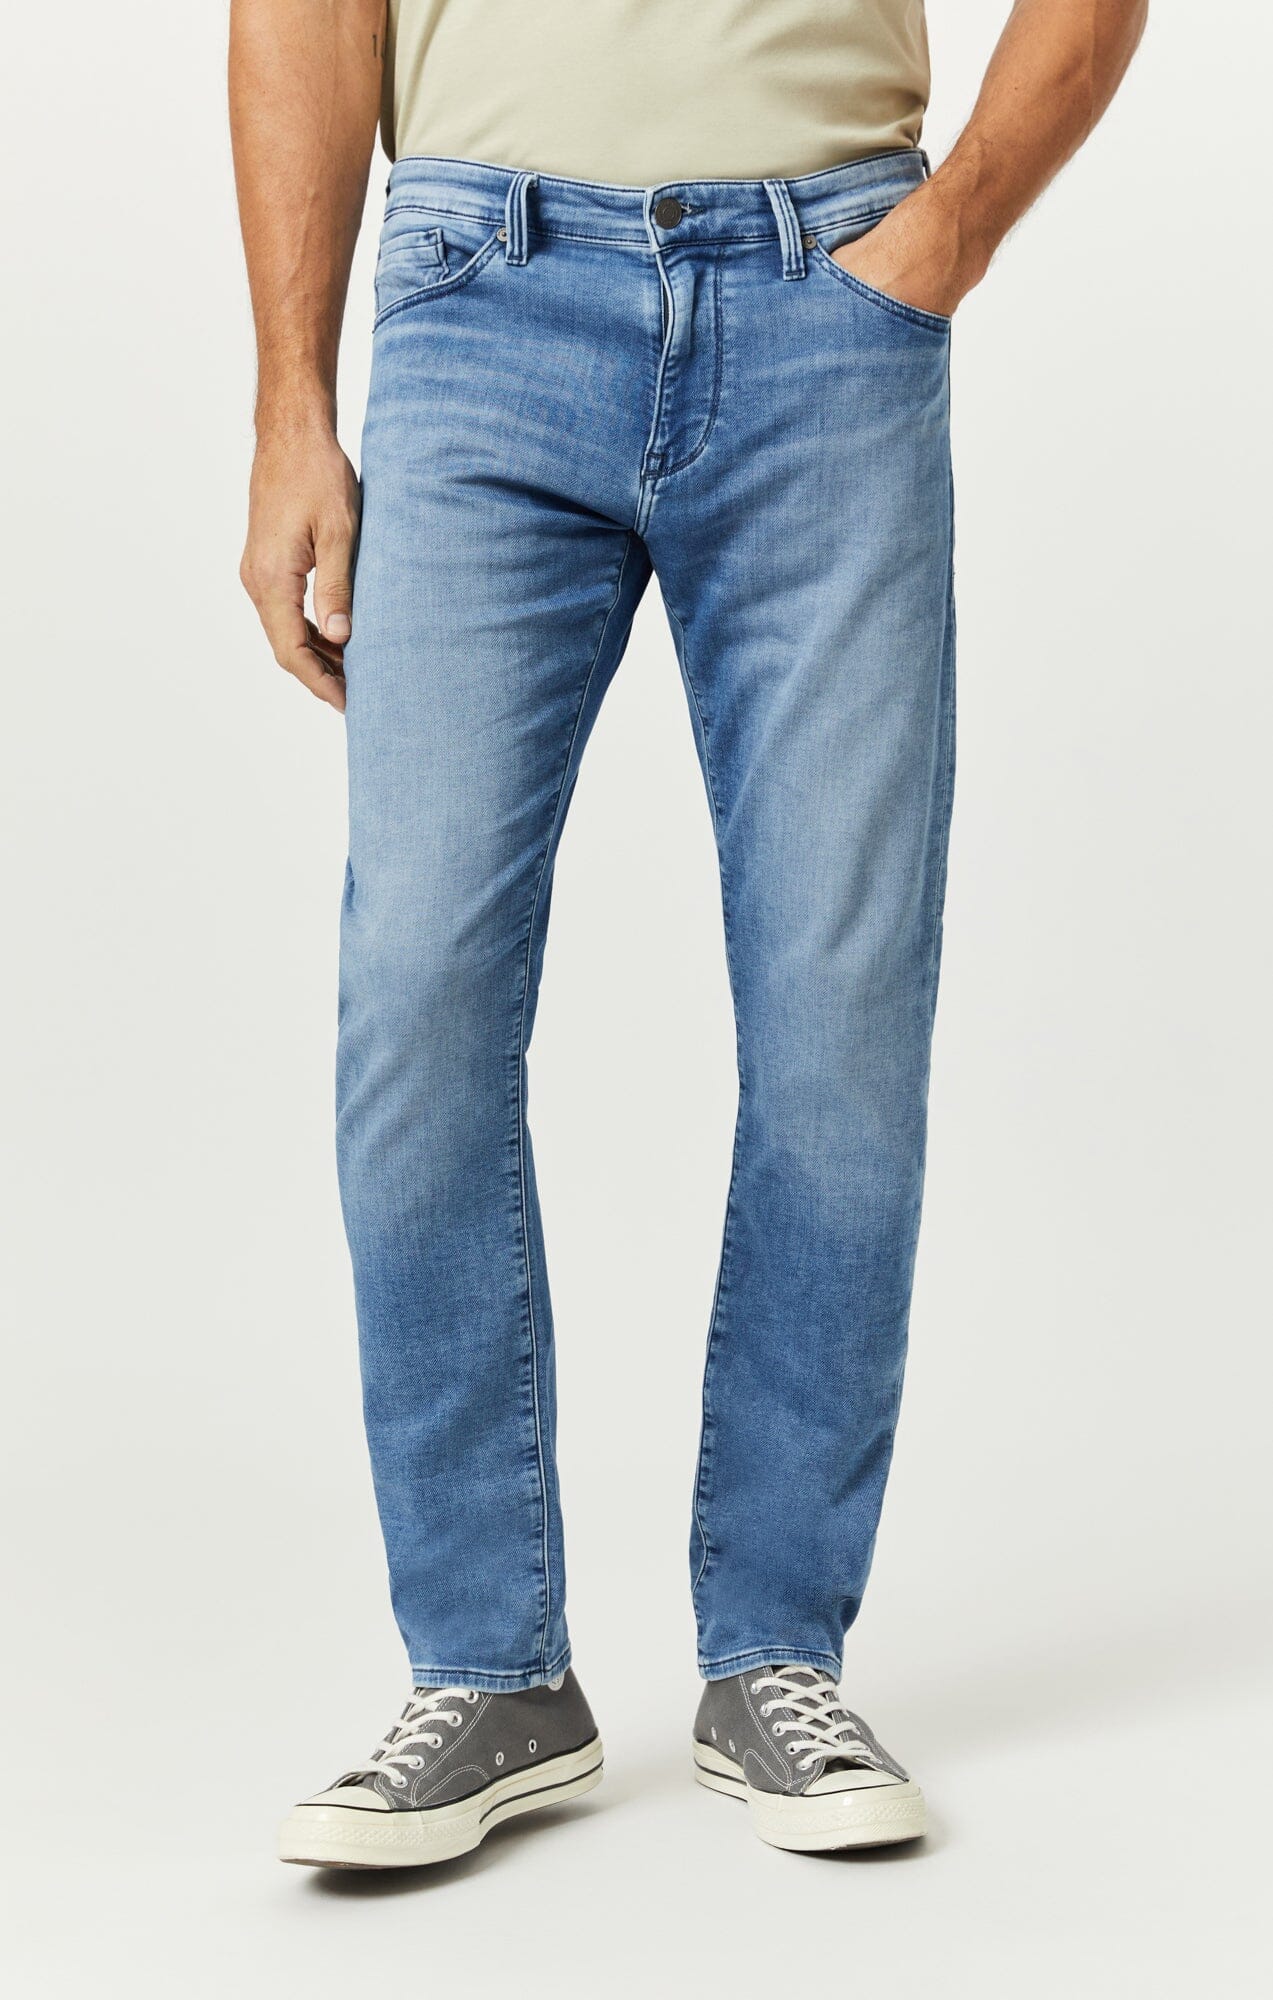 Men's Straight Leg Jeans - Shop Straight Jeans for Men | Mavi Jeans®